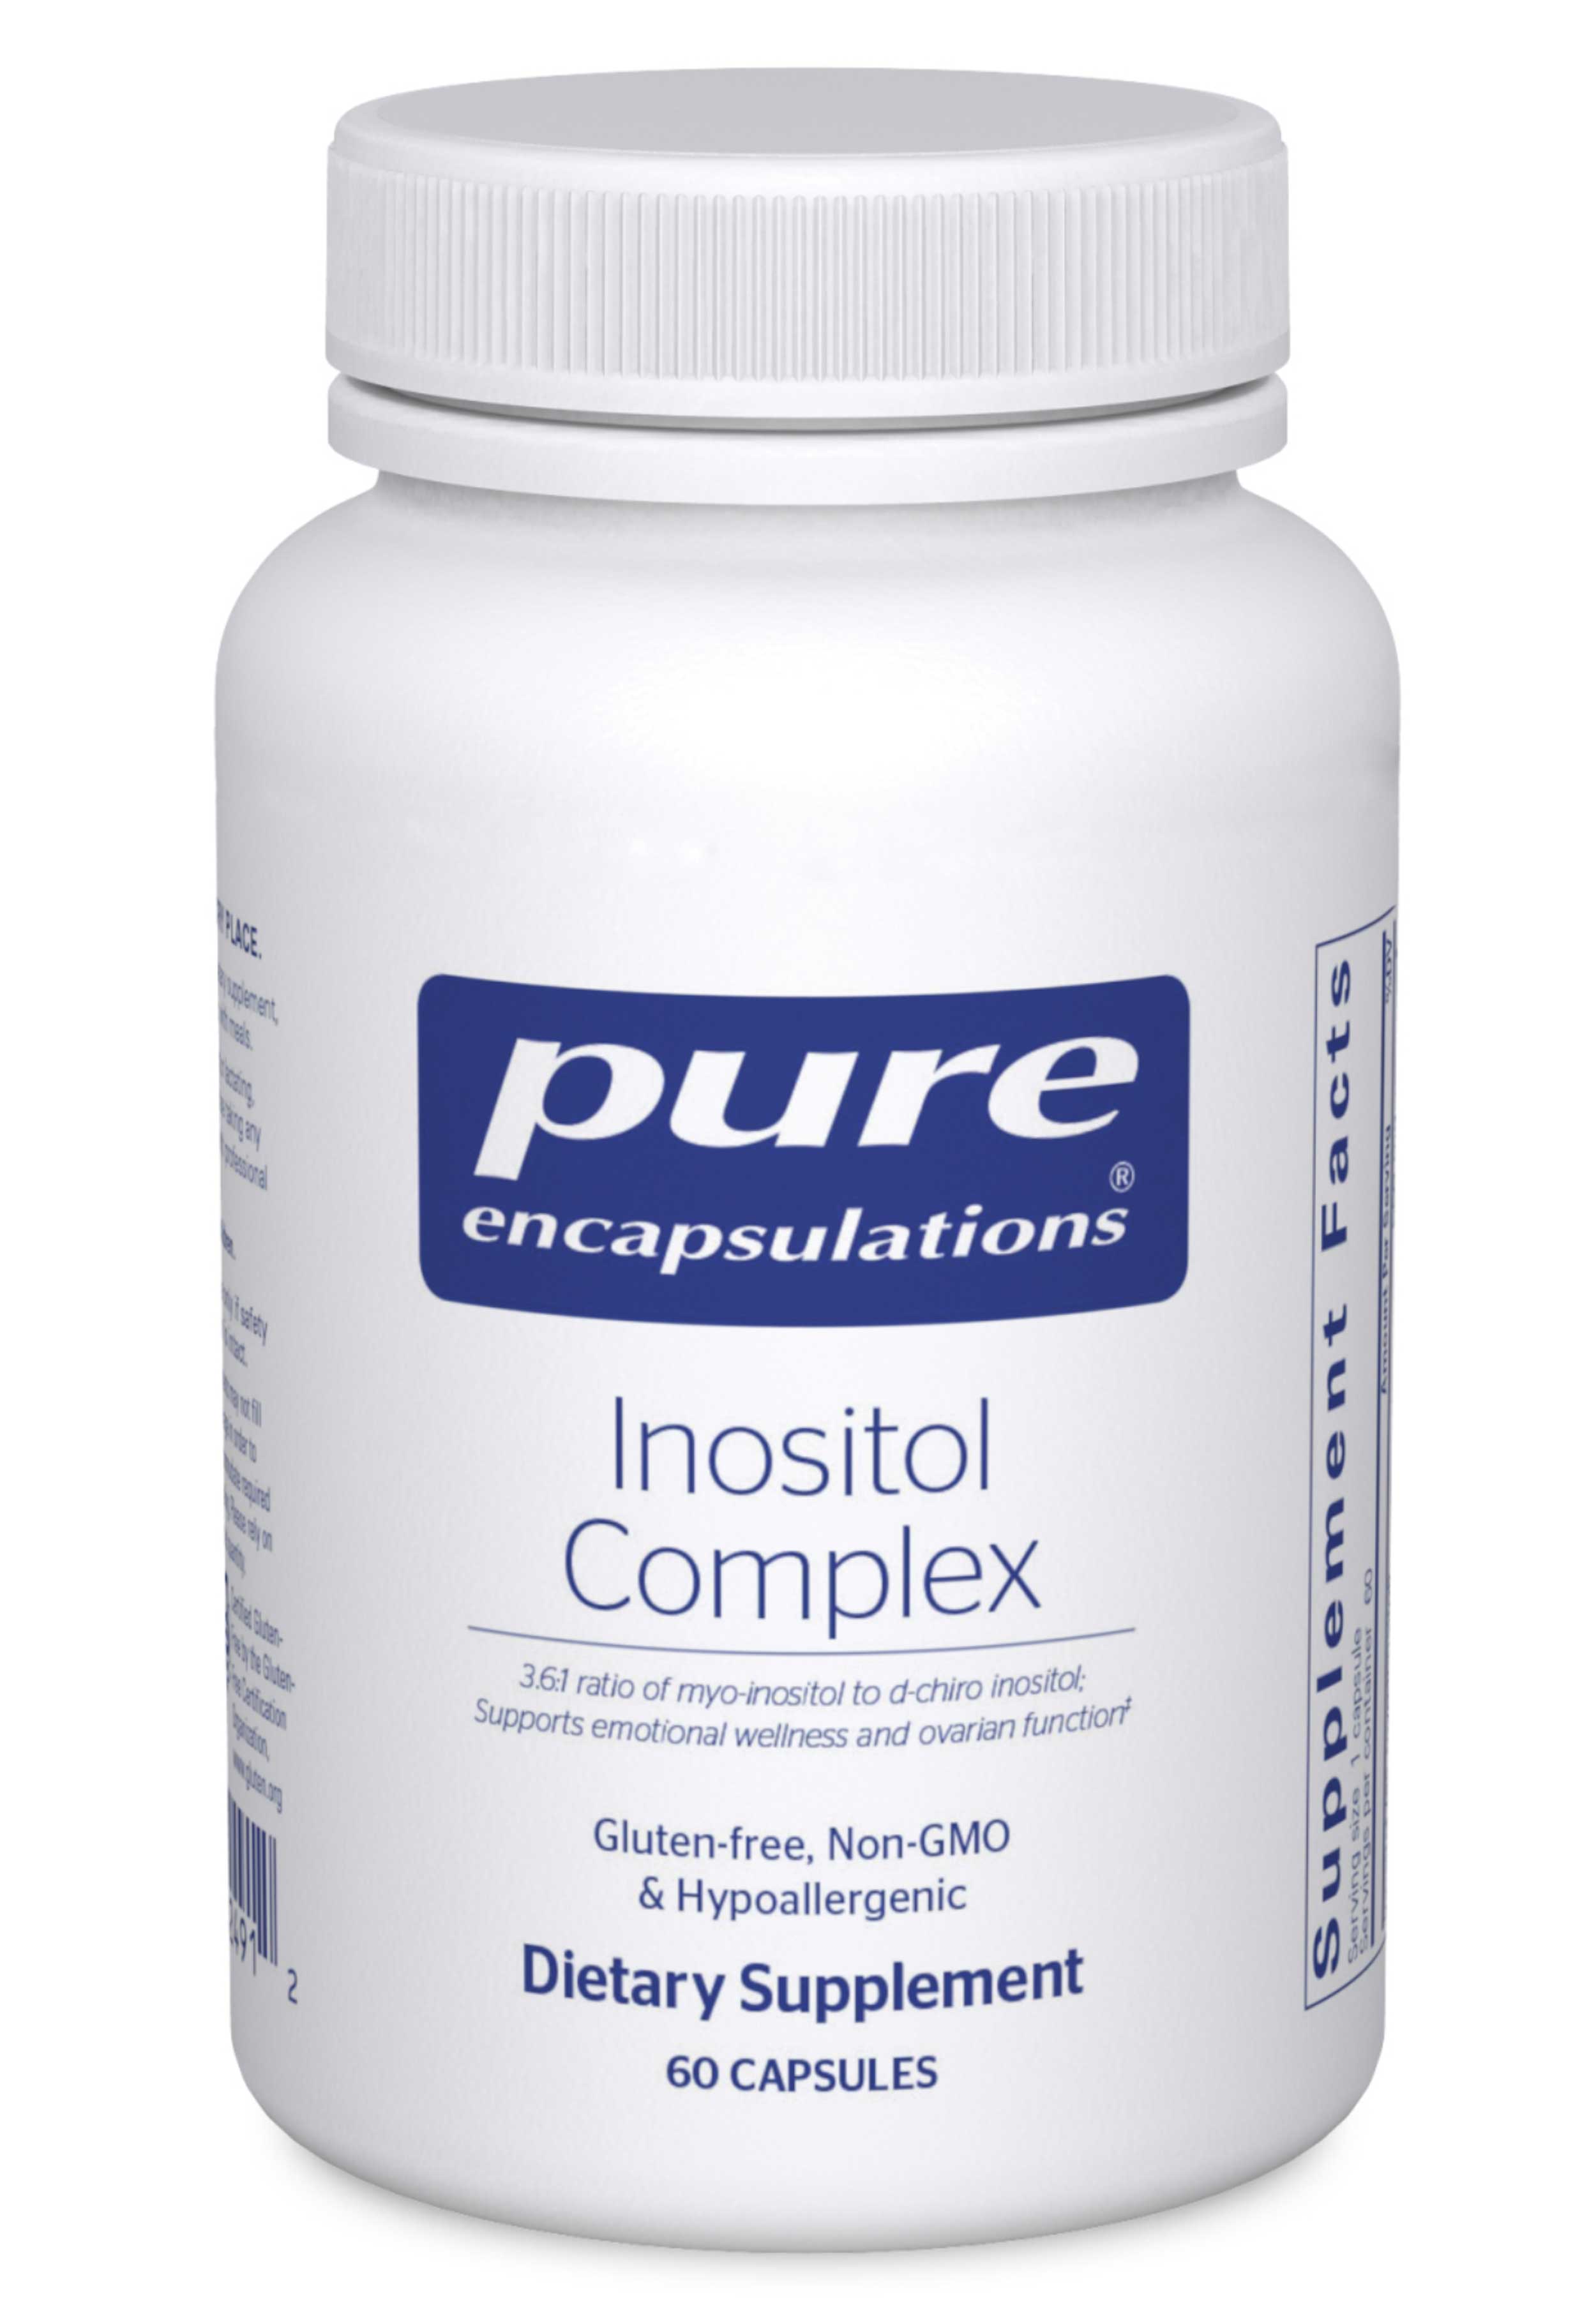 Pure Encapsulations Inositol Complex